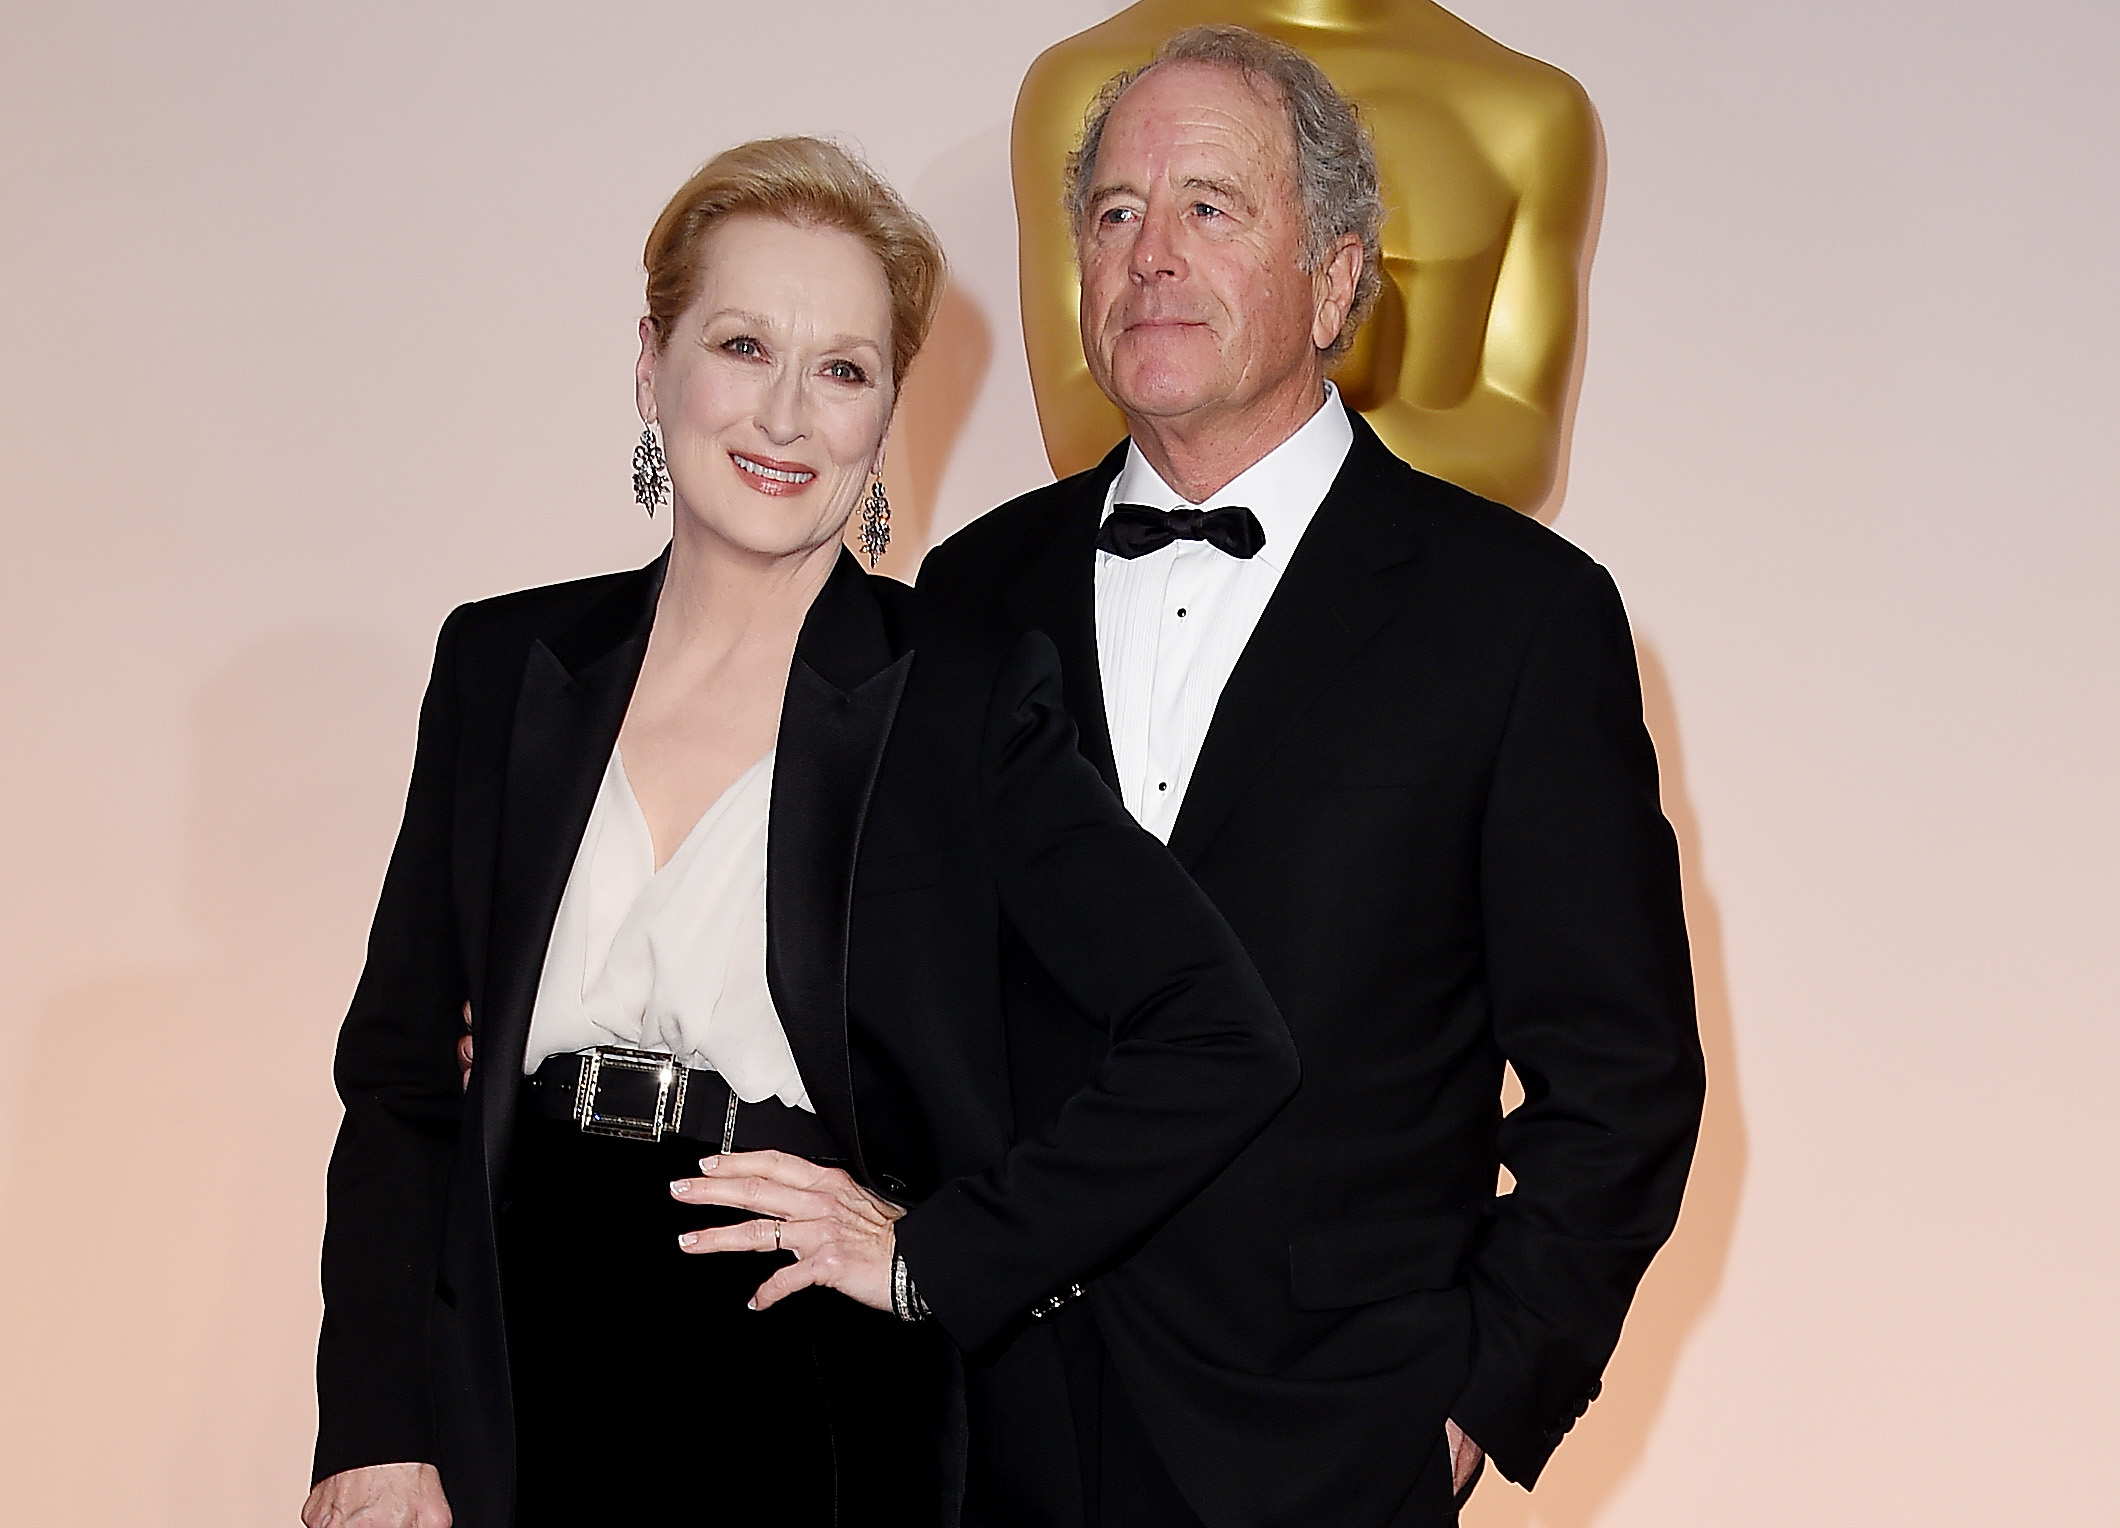 L'actrice Meryl Streep (G) et le sculpteur Don Gummer assistent à la 87e cérémonie annuelle des Oscars au Hollywood & Highland Center le 22 février 2015 à Hollywood, Californie. | Source : Getty Images